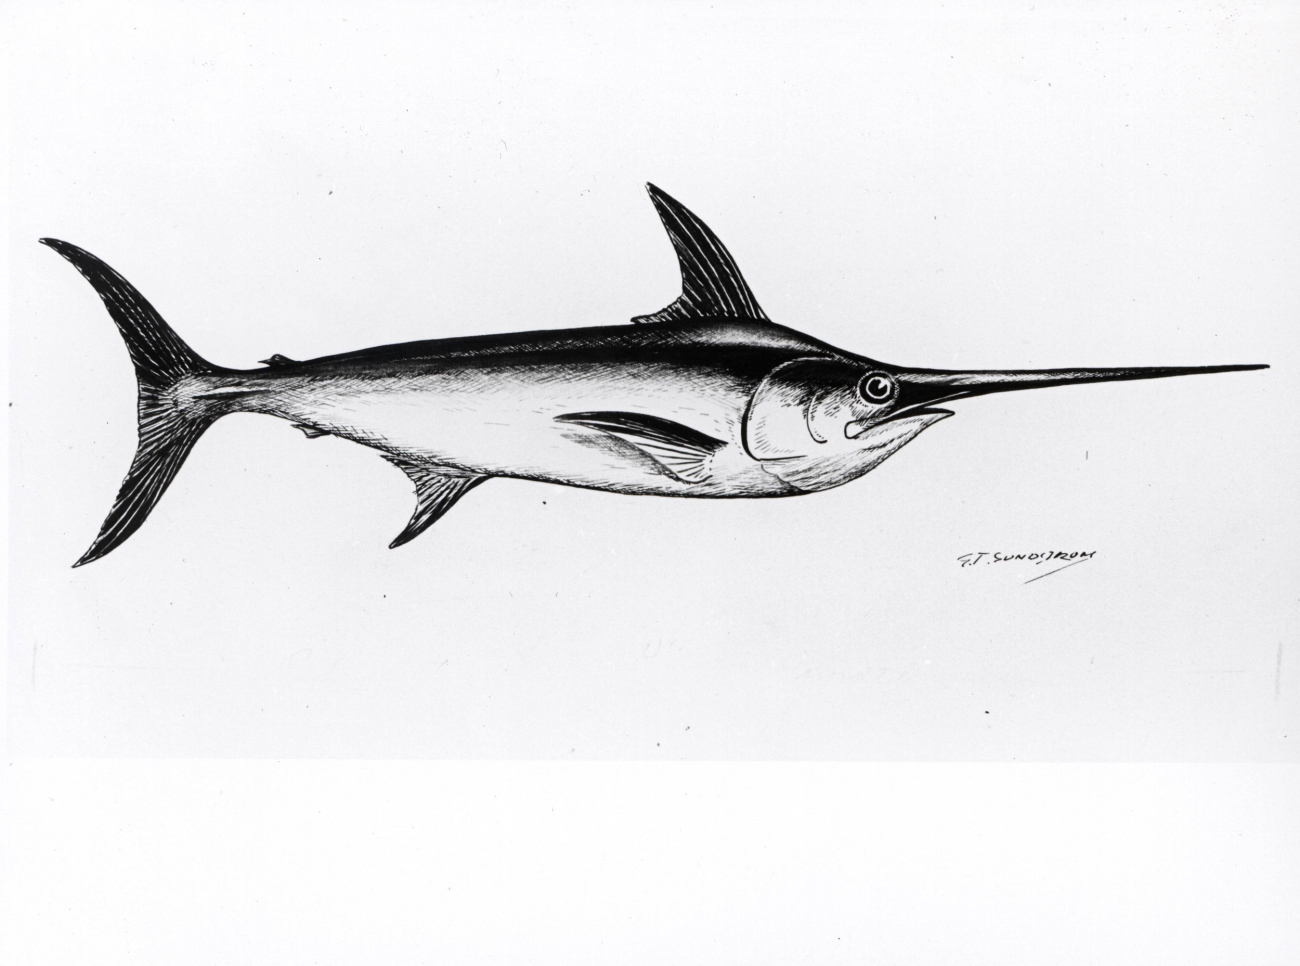 Broadbill swordfish (Xiphias gladius)